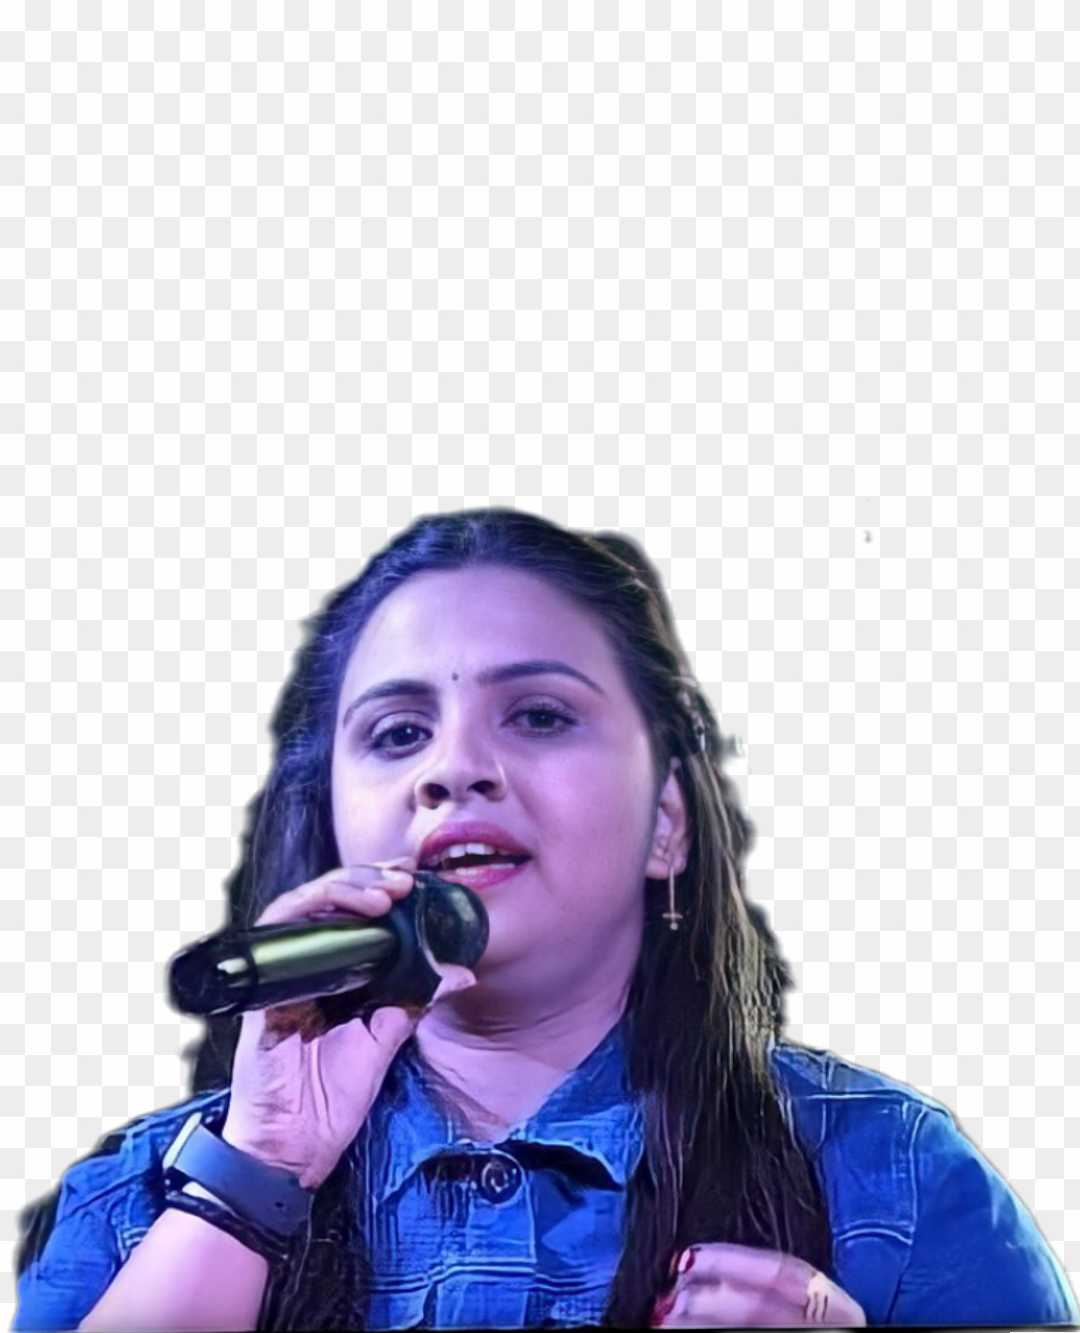 Singer Anupama Yadav hd photo png download